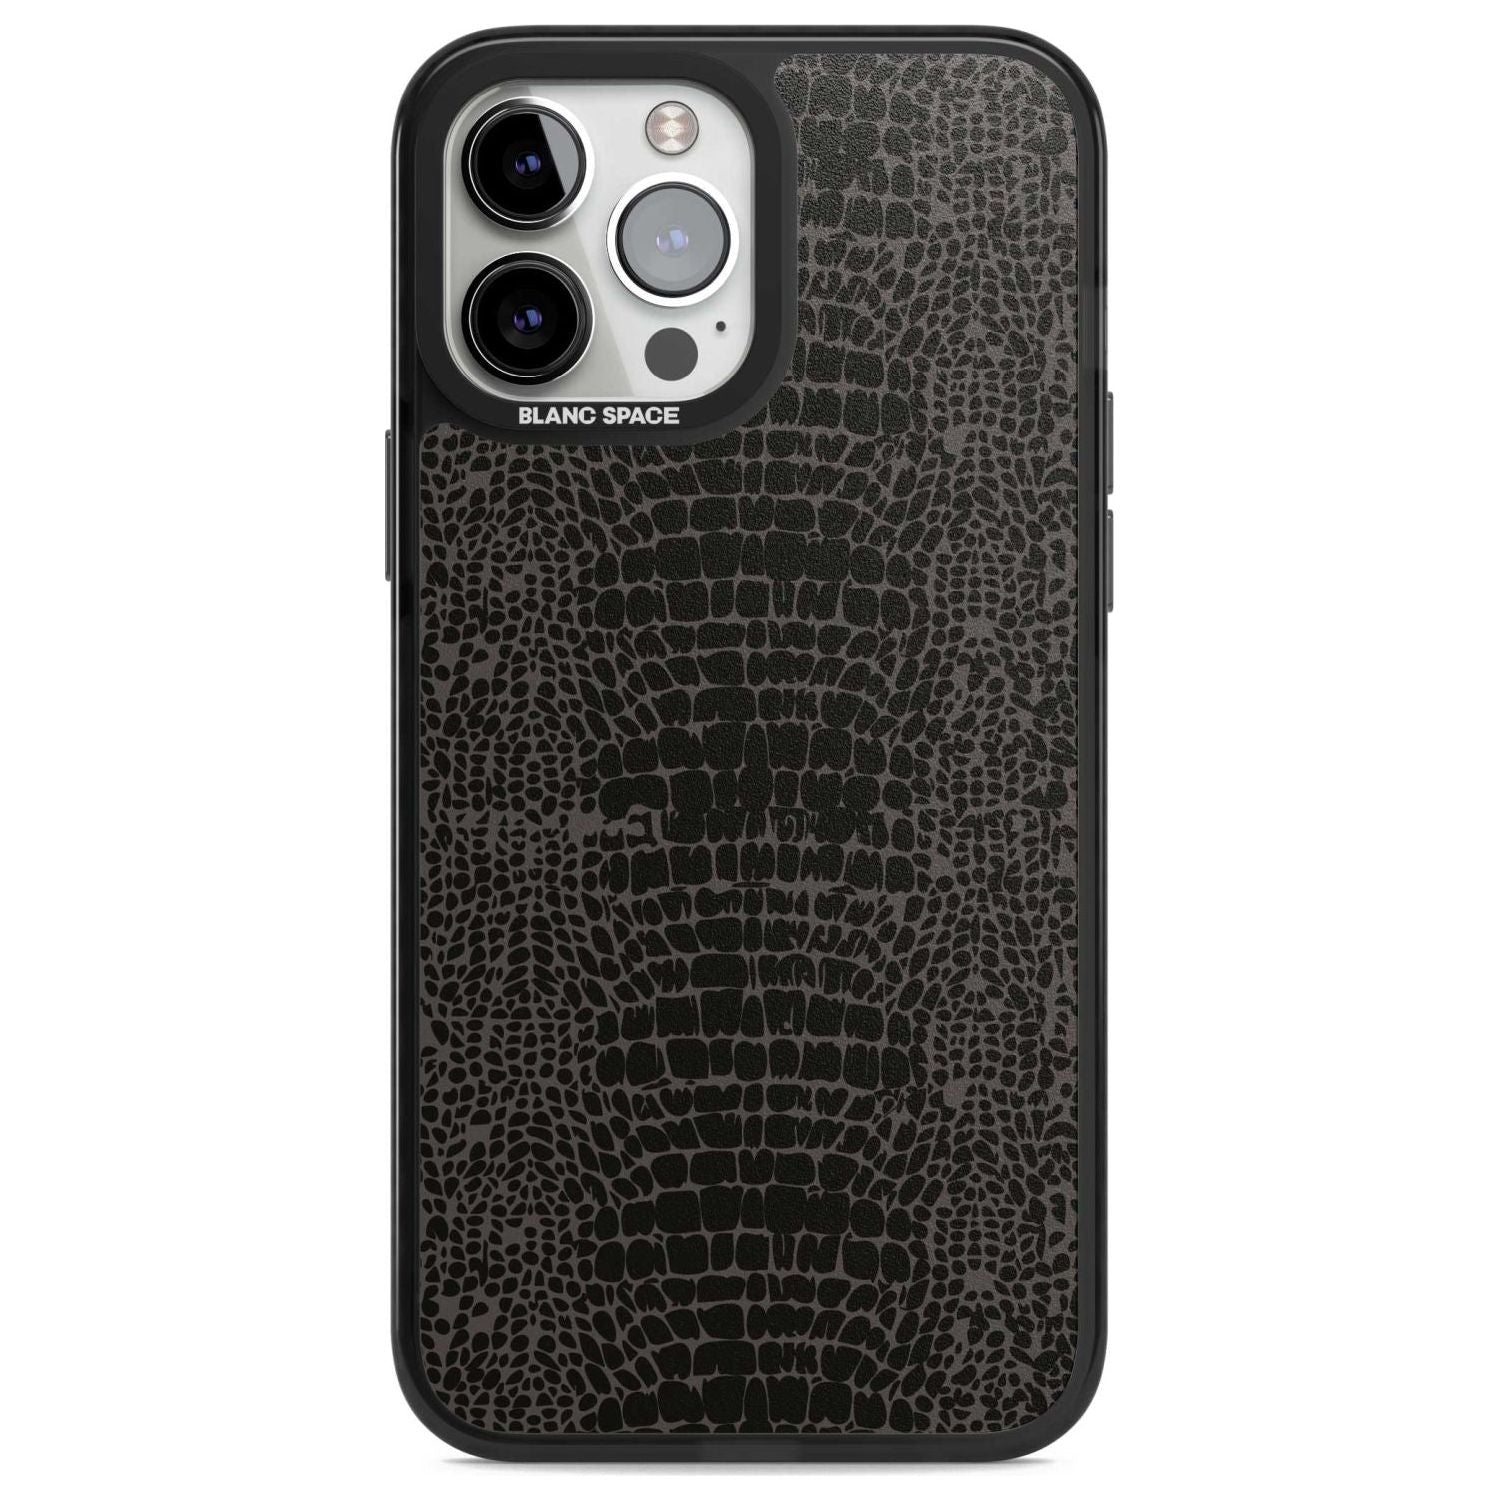 Dark Animal Print Pattern Snake Skin Phone Case iPhone 13 Pro Max / Magsafe Black Impact Case Blanc Space